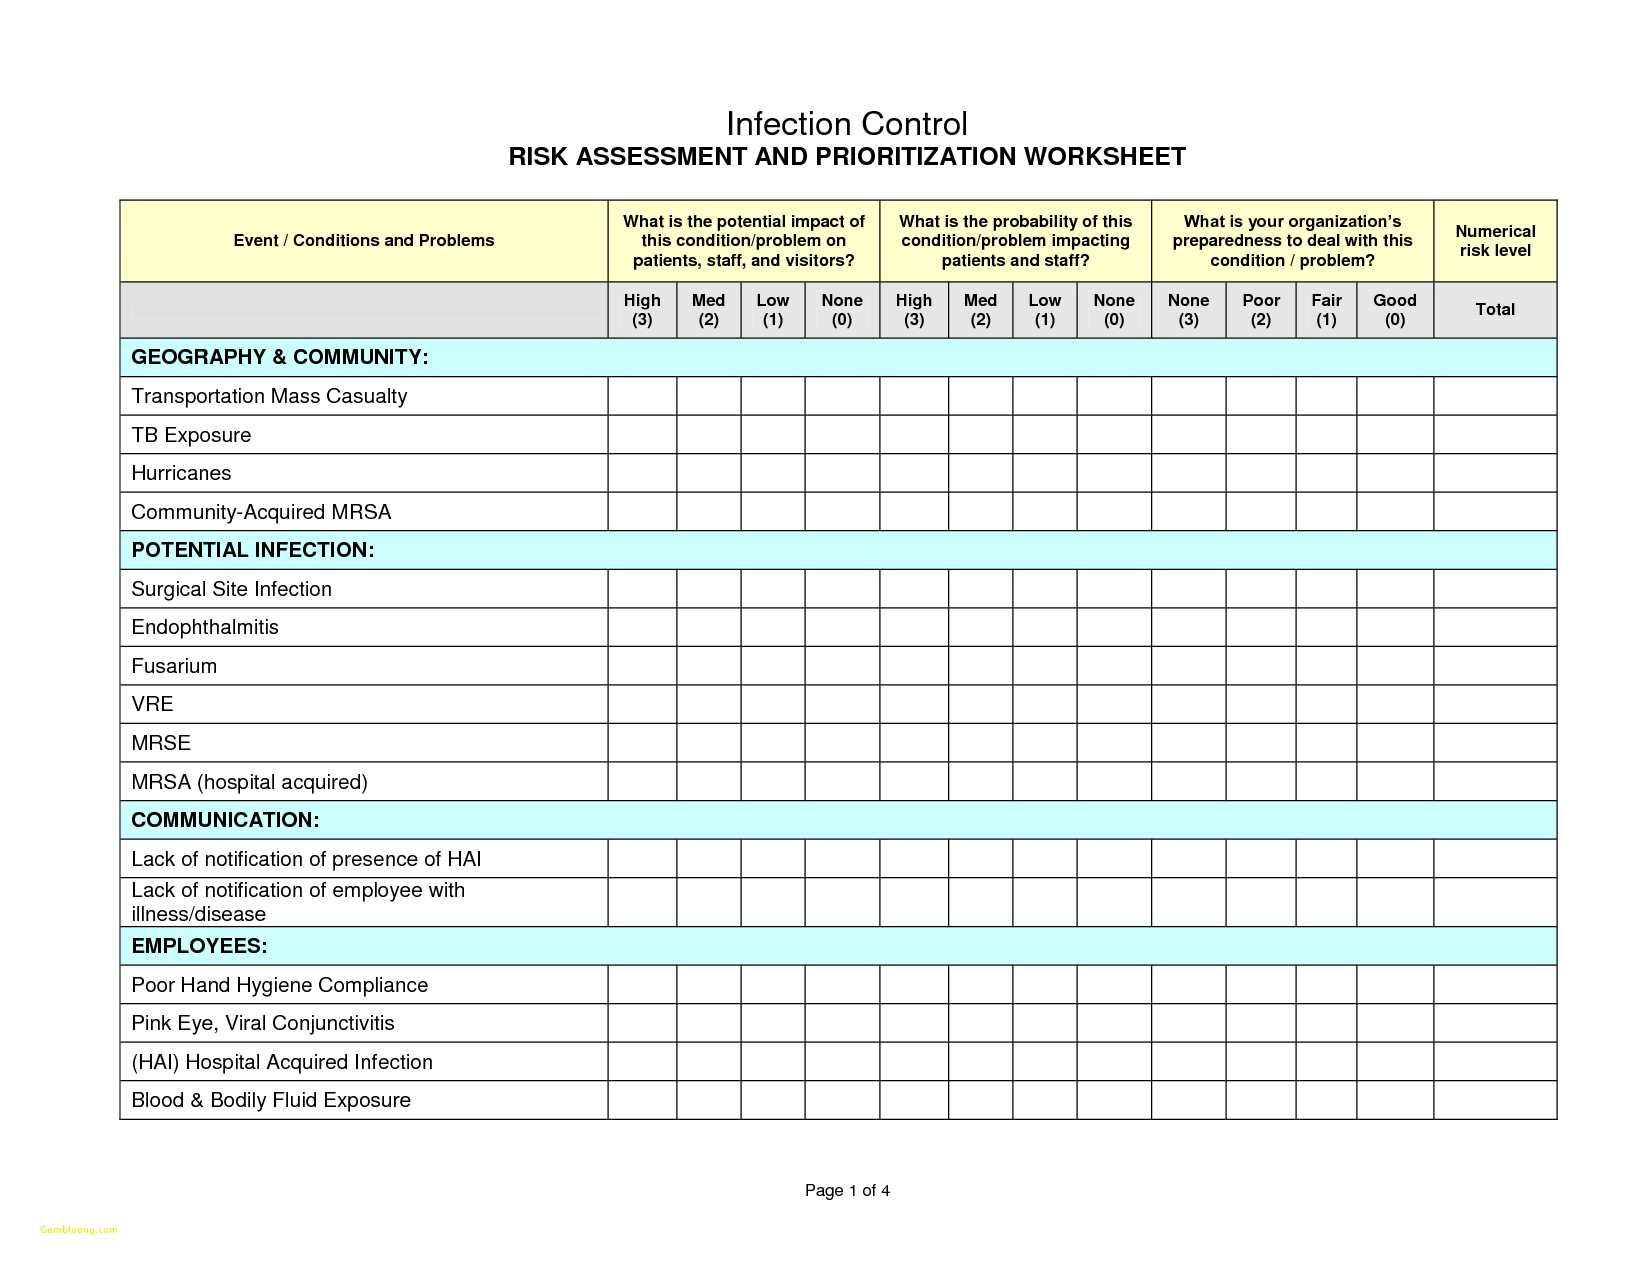 risk-assessment-spreadsheet-db-excel